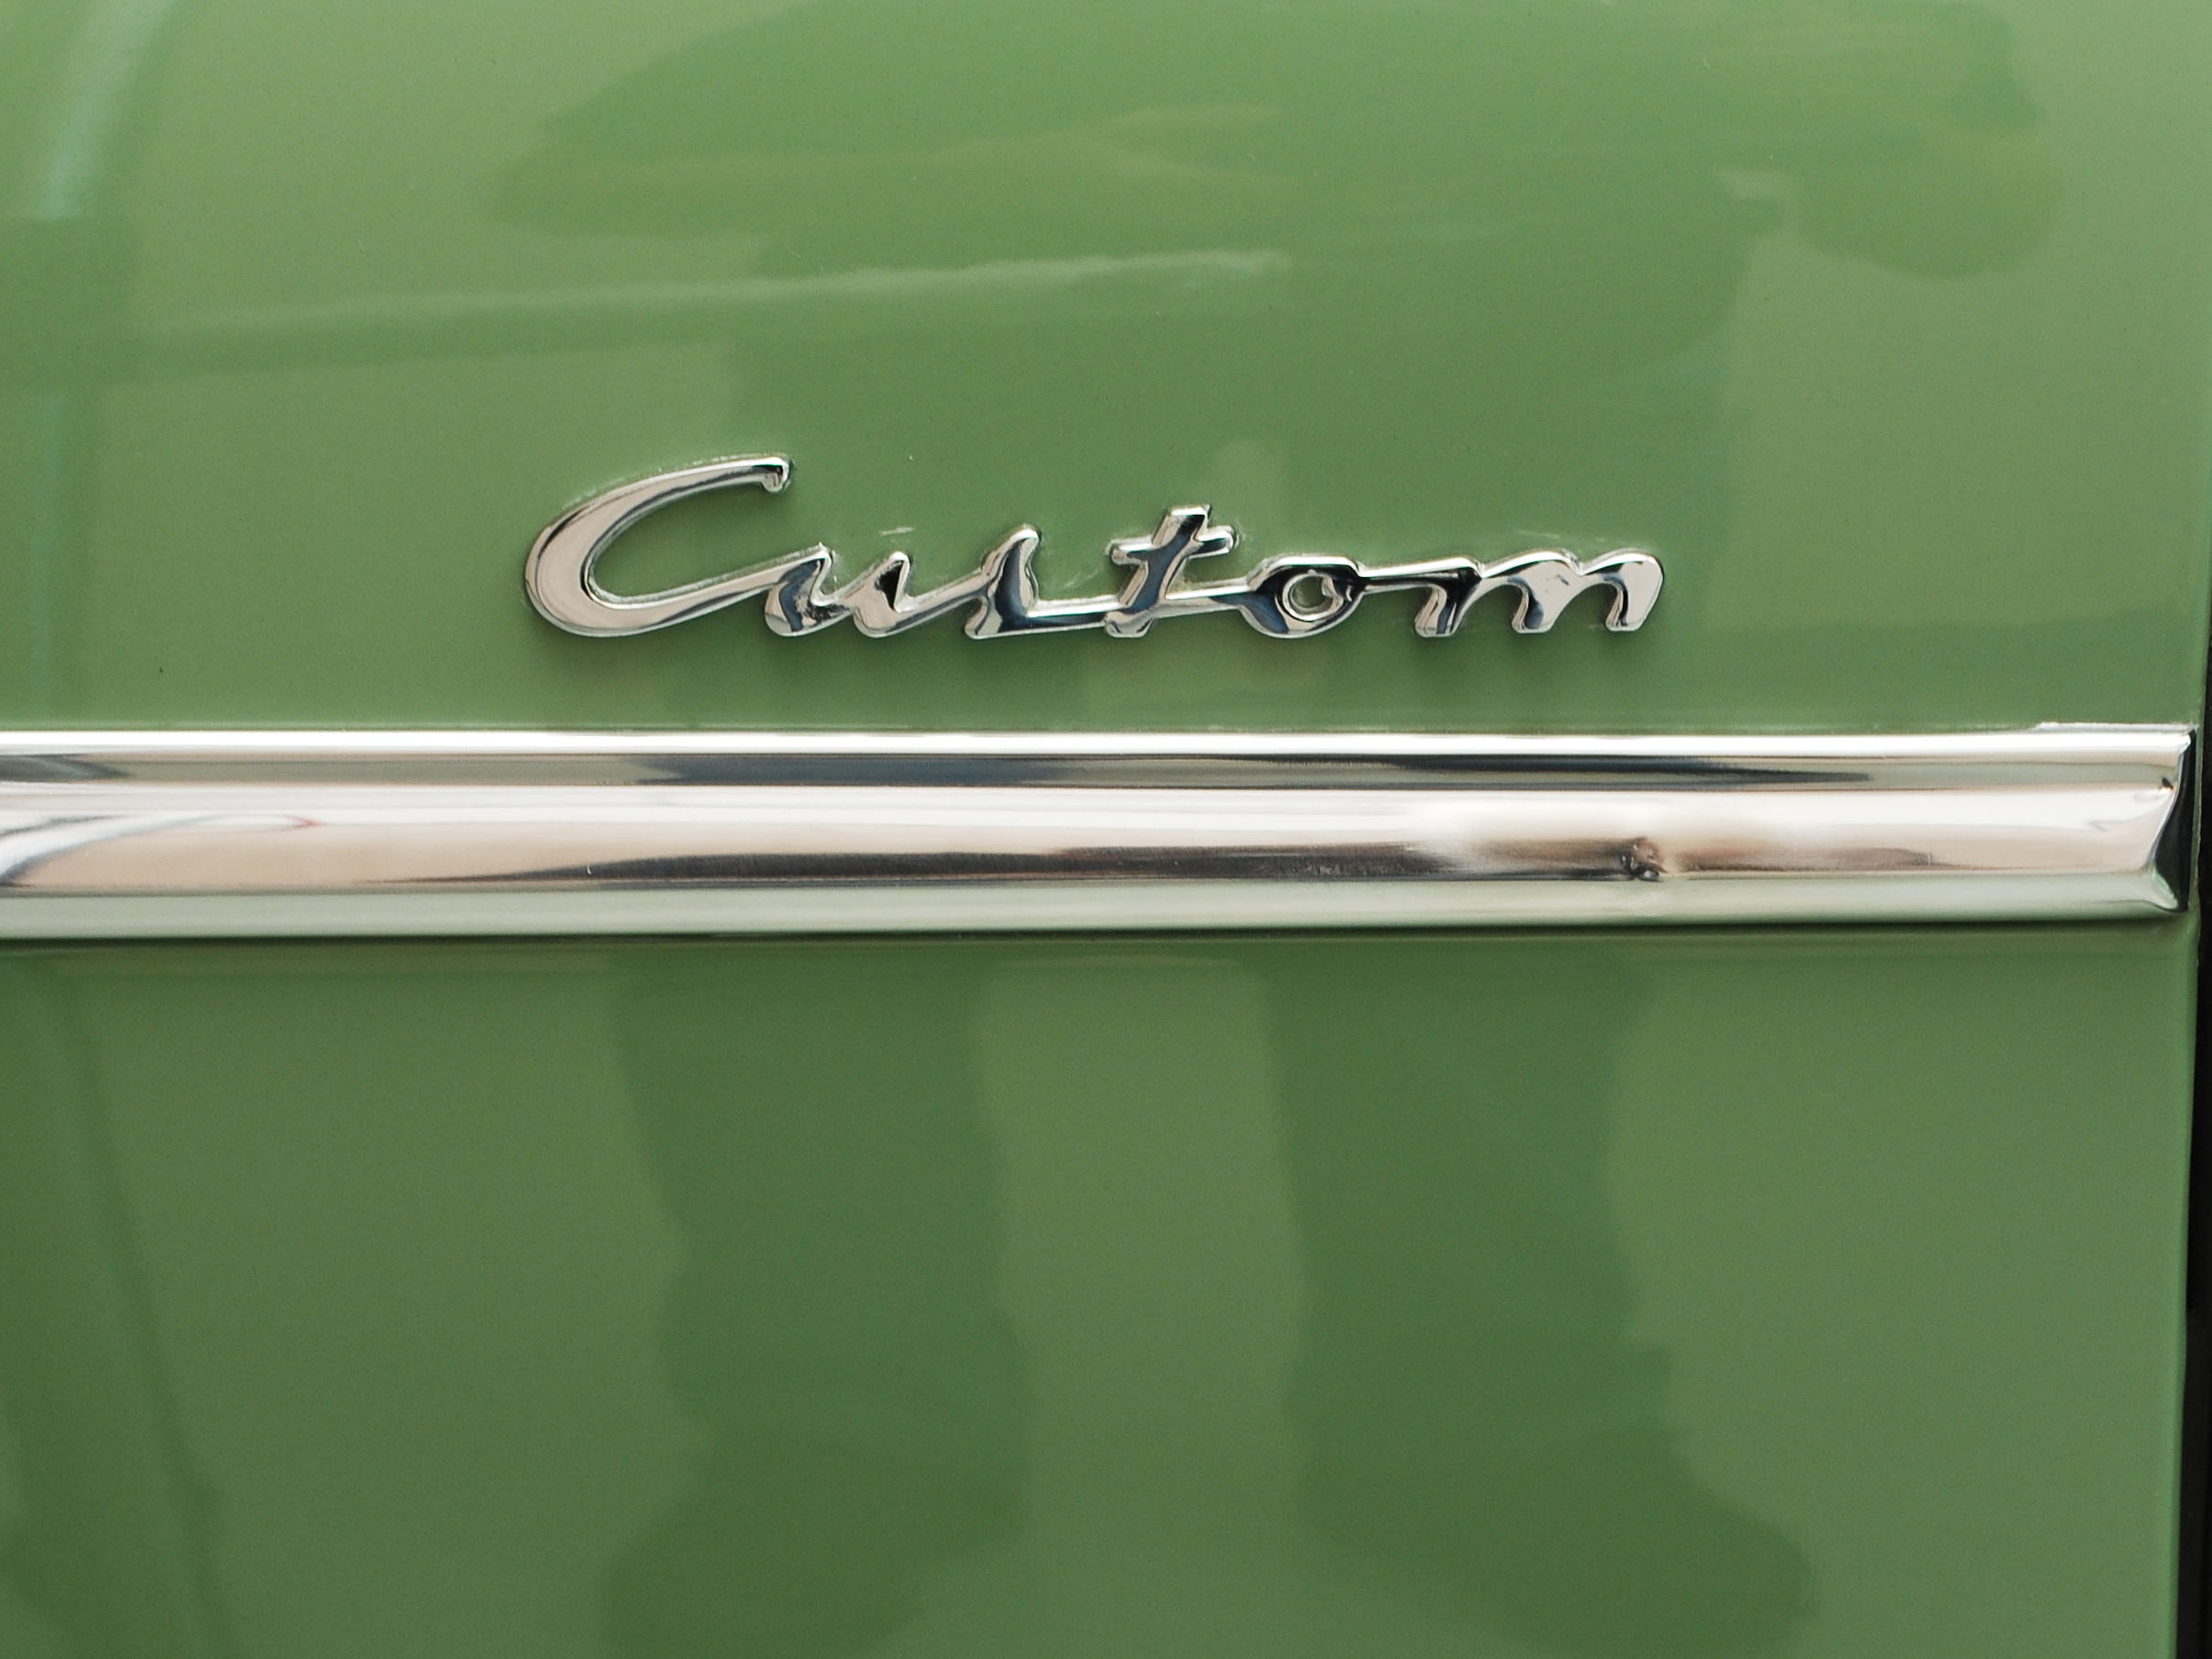 1951 desoto custom suburban